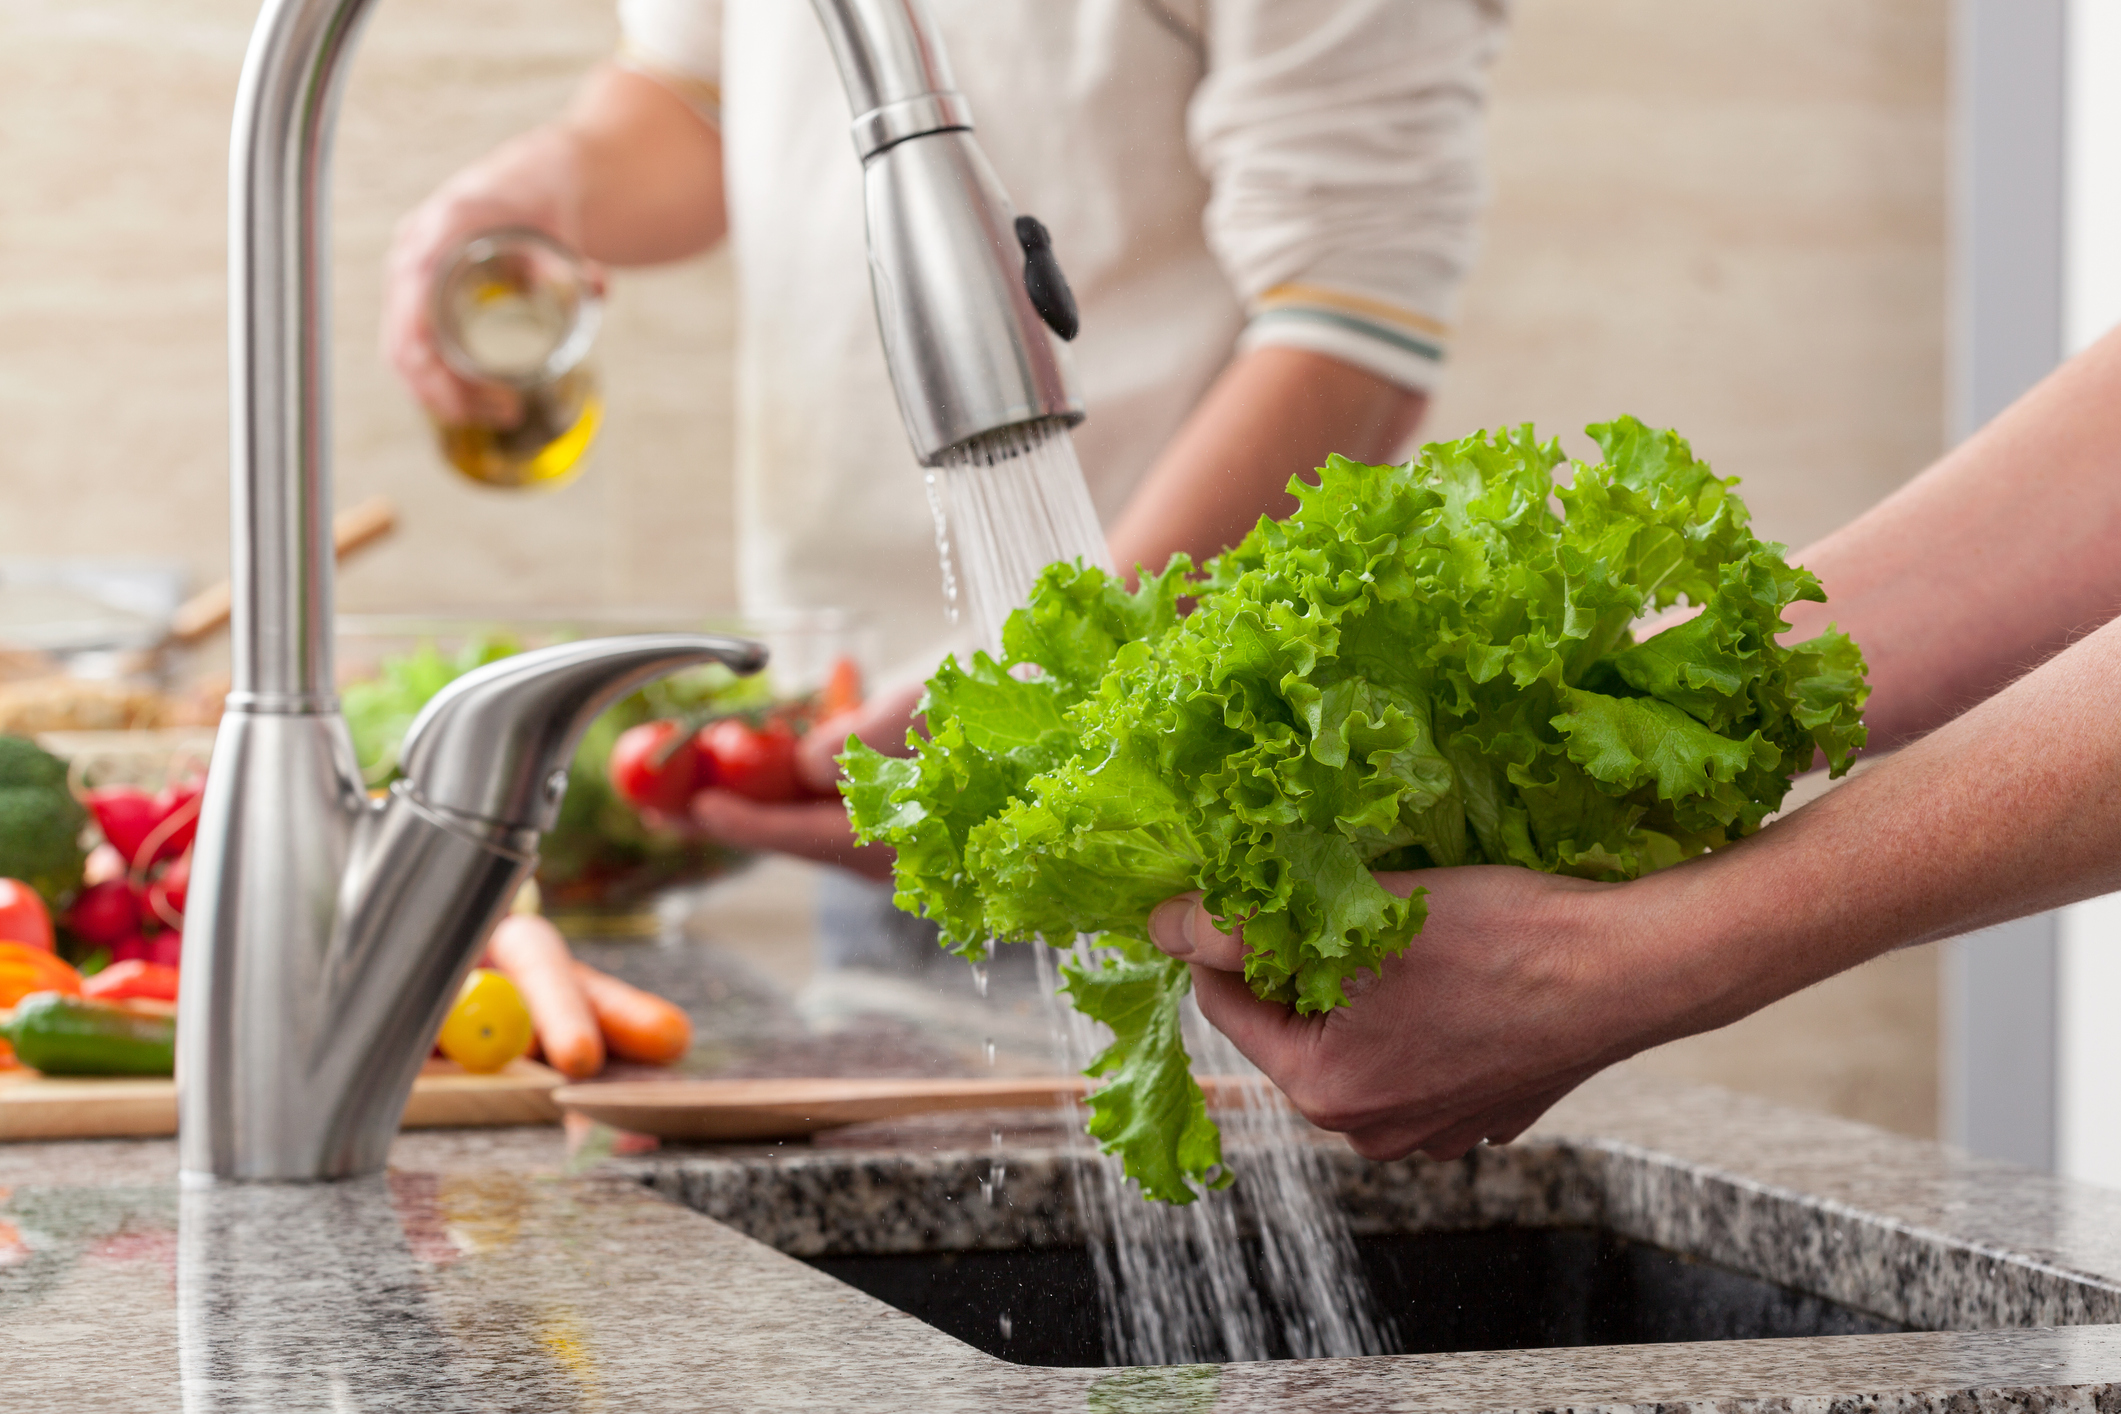 Saiba a importância da correta higienização dos alimentos